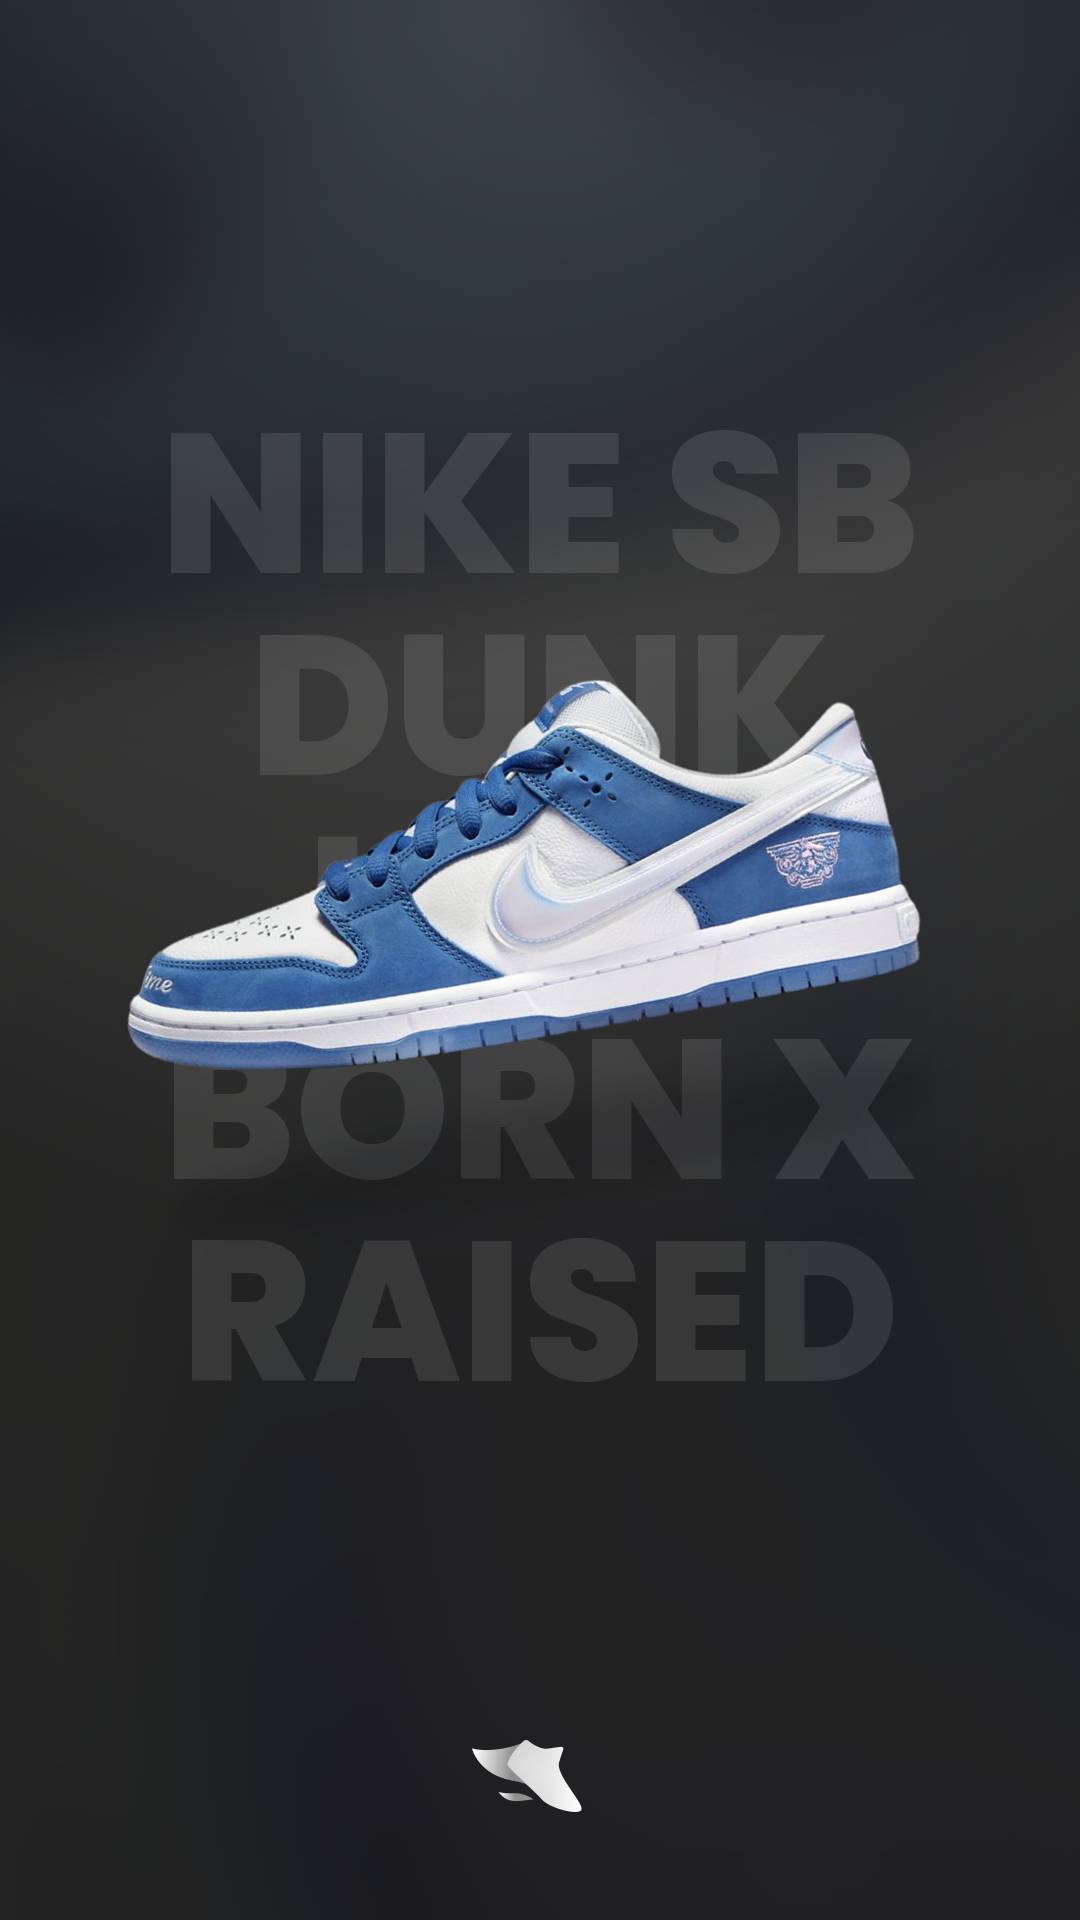 Born x Raised Nike SB releases September 28th